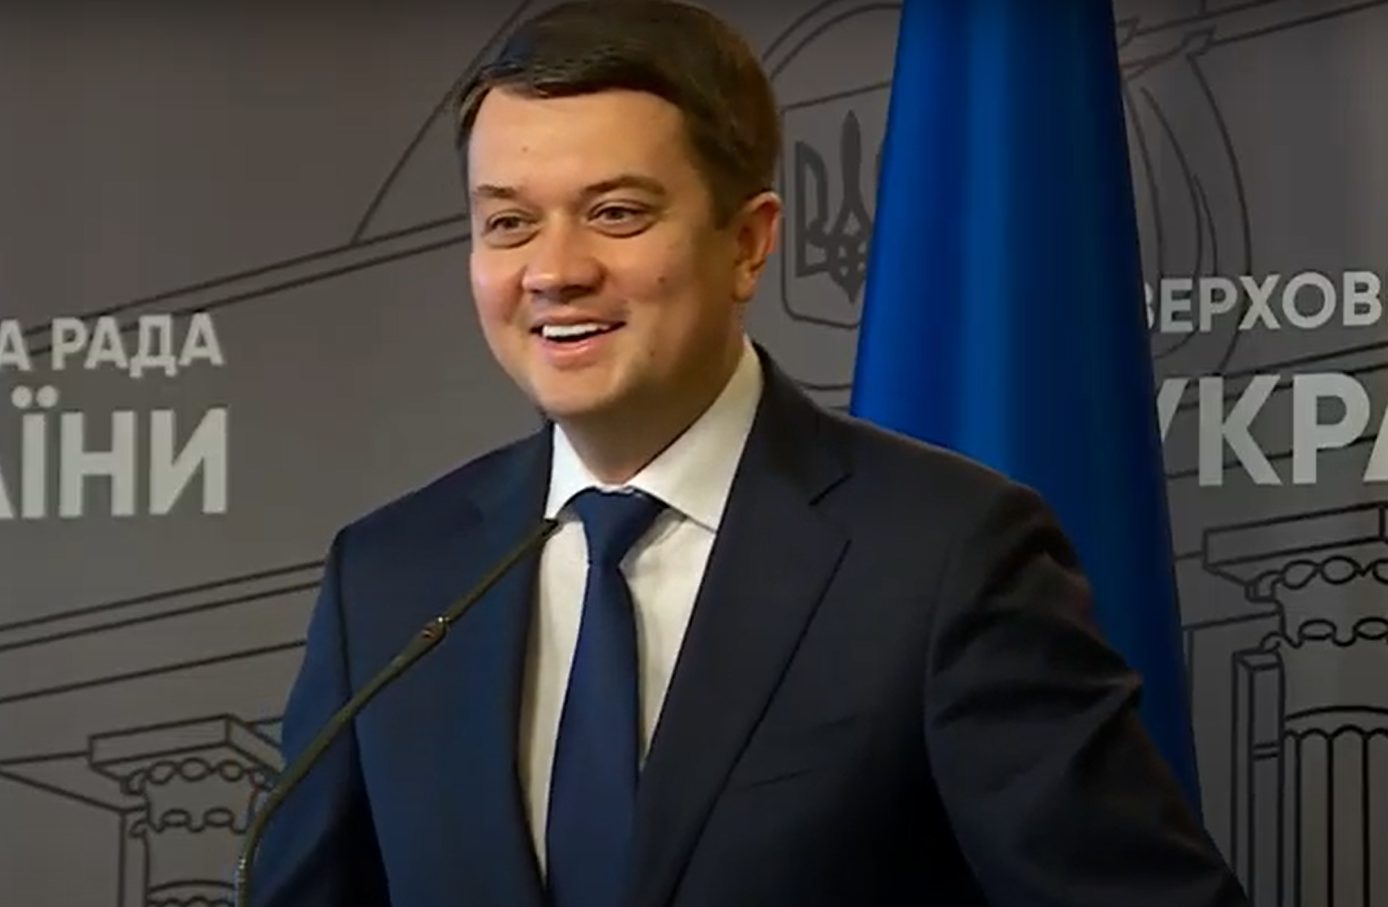 Дмитро Разумков прокоментував рішення Ради про свою відставку - відео